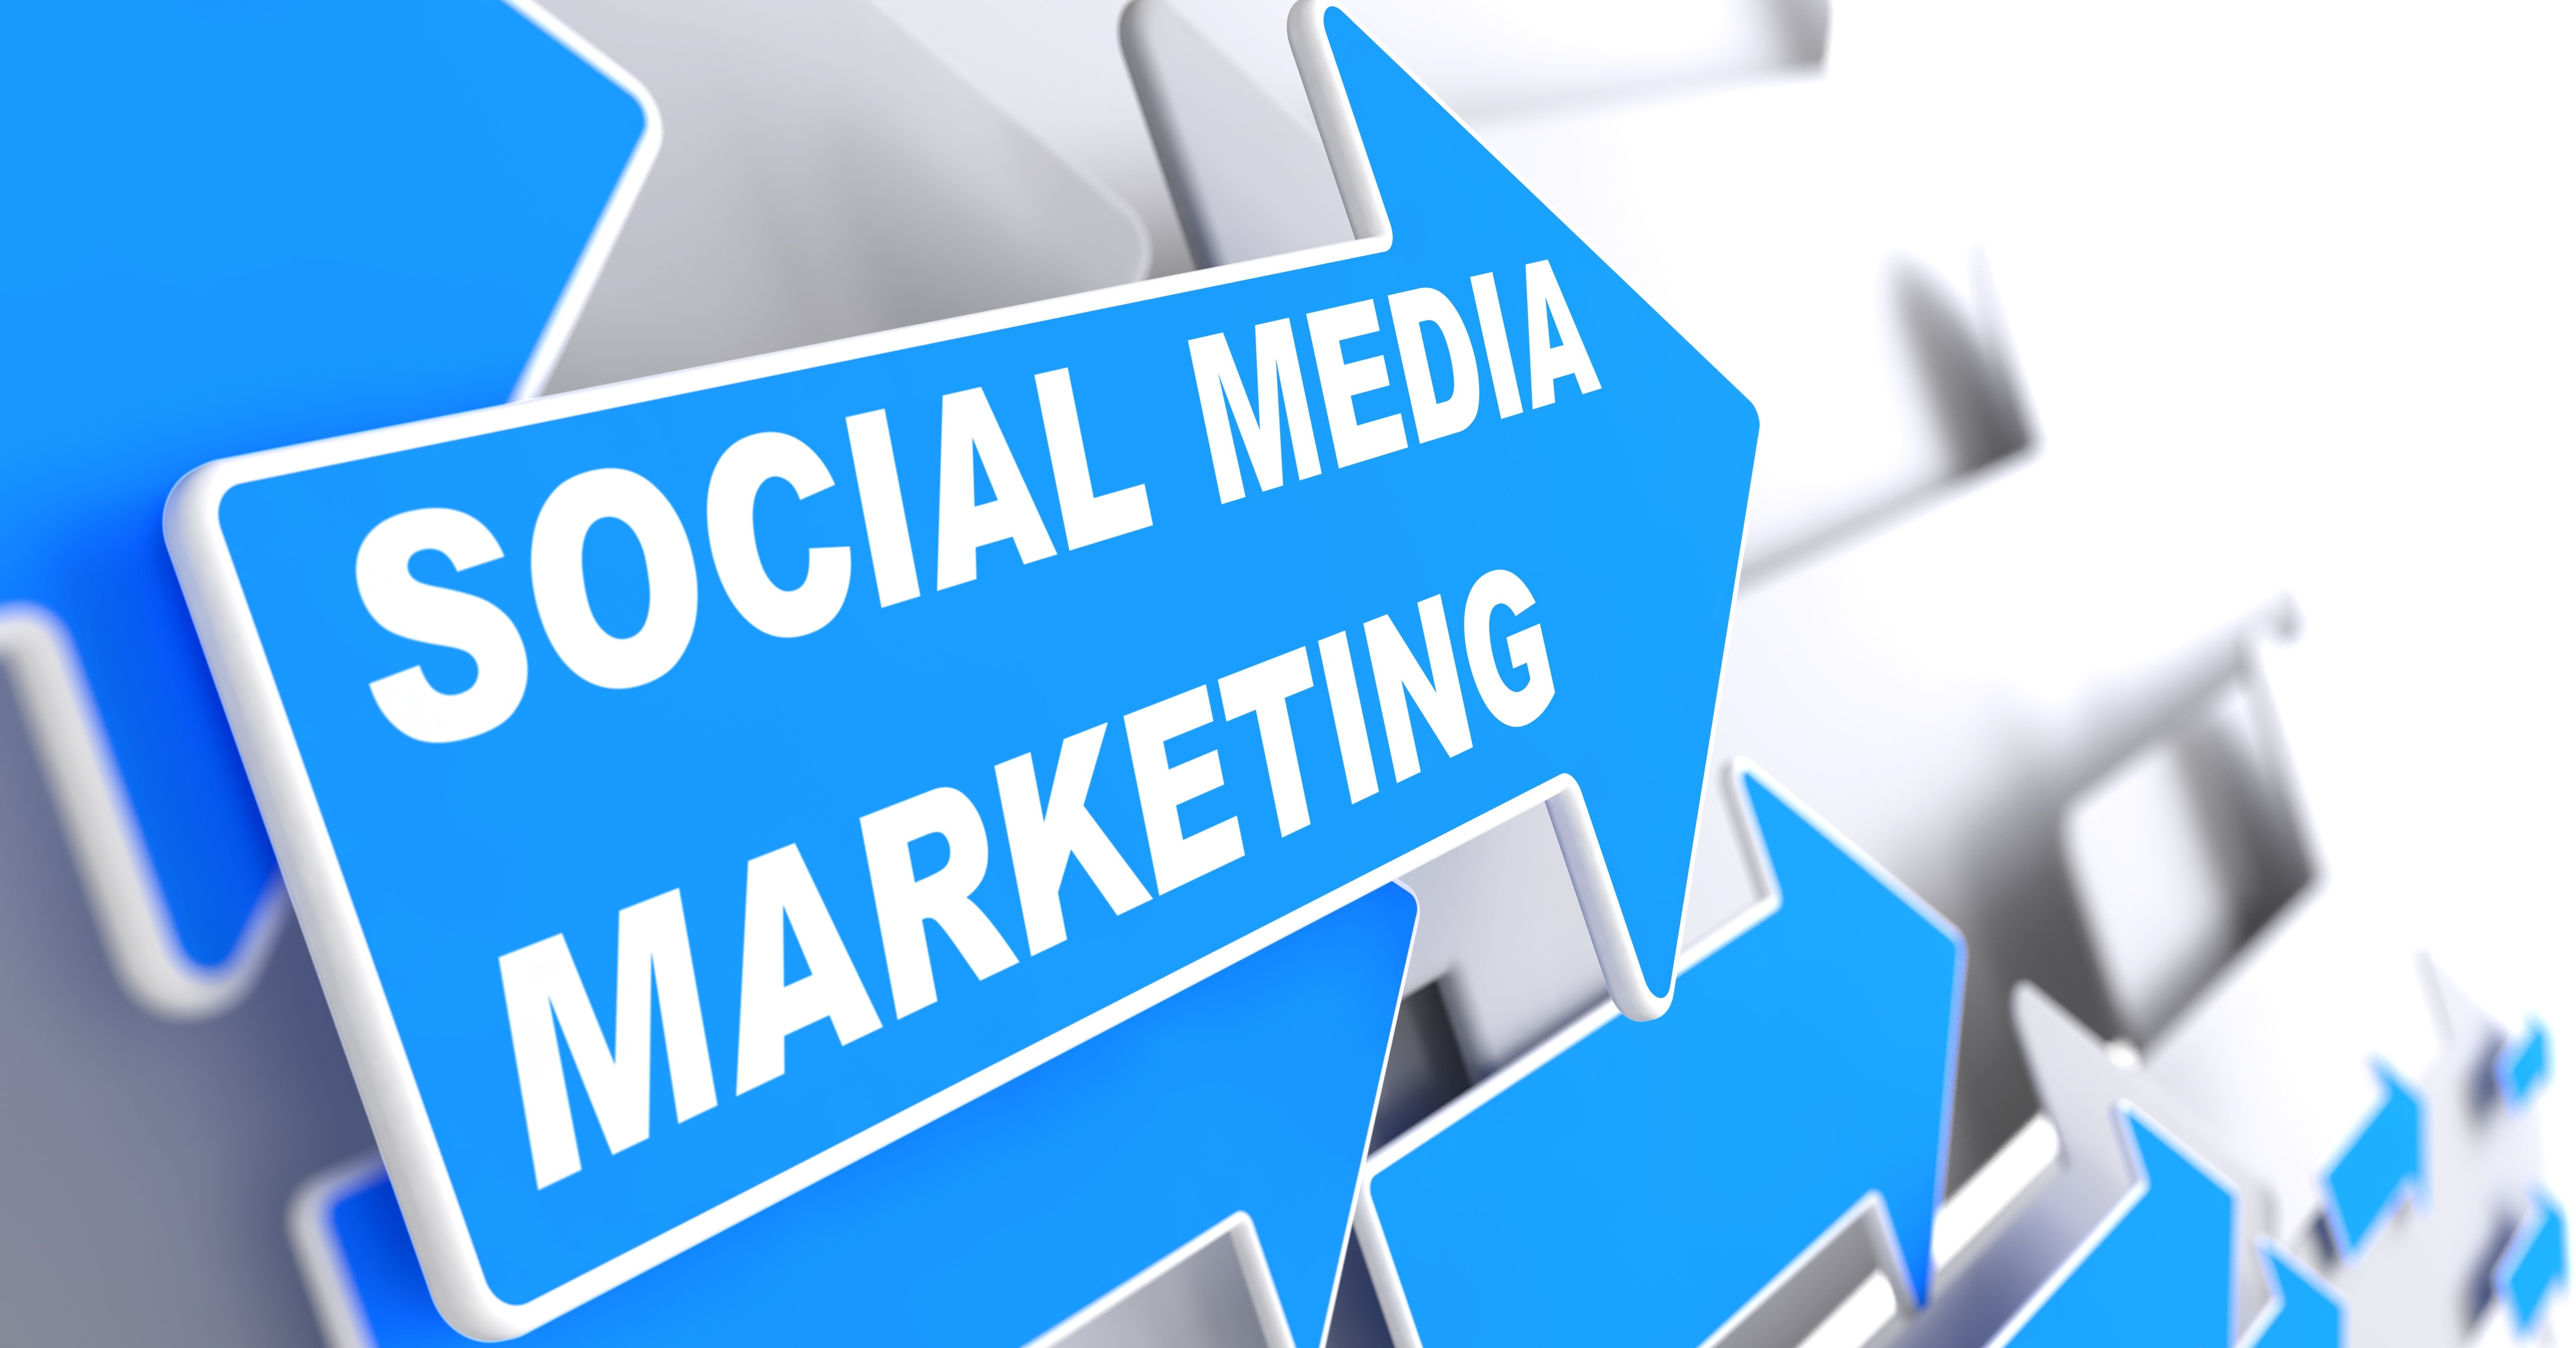 Social-Media-Marketing-ROI-A-Step-by-Step-Guide.jpg